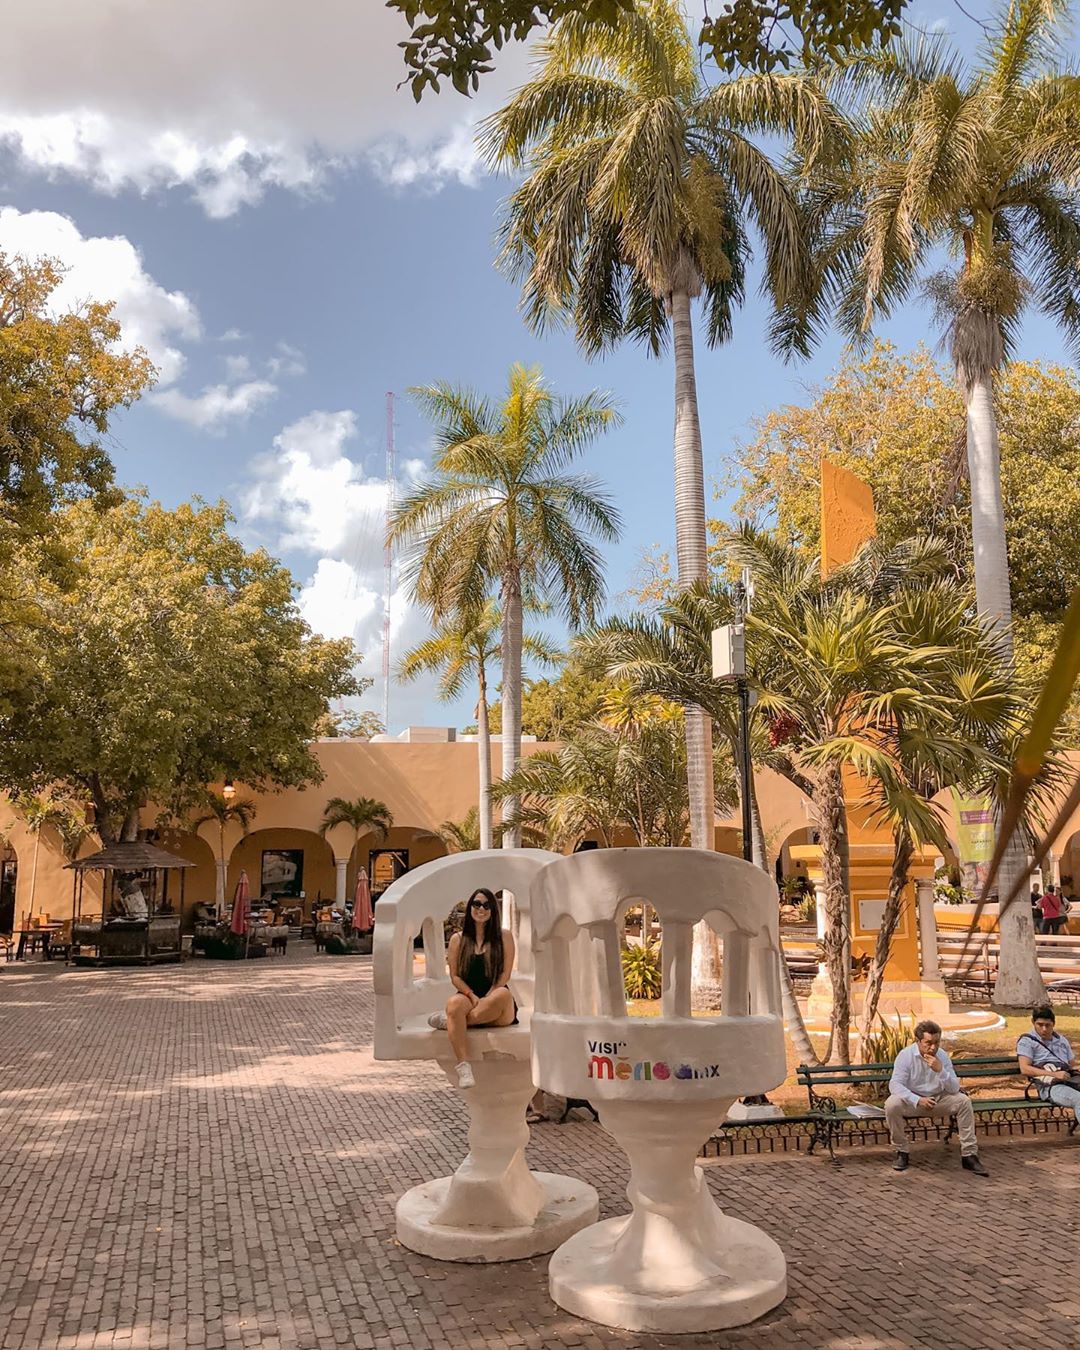 Parque de Santa Lucia Merida Yucatan trova yucateca sillas confidentes TOP Yucatan Instagram merida